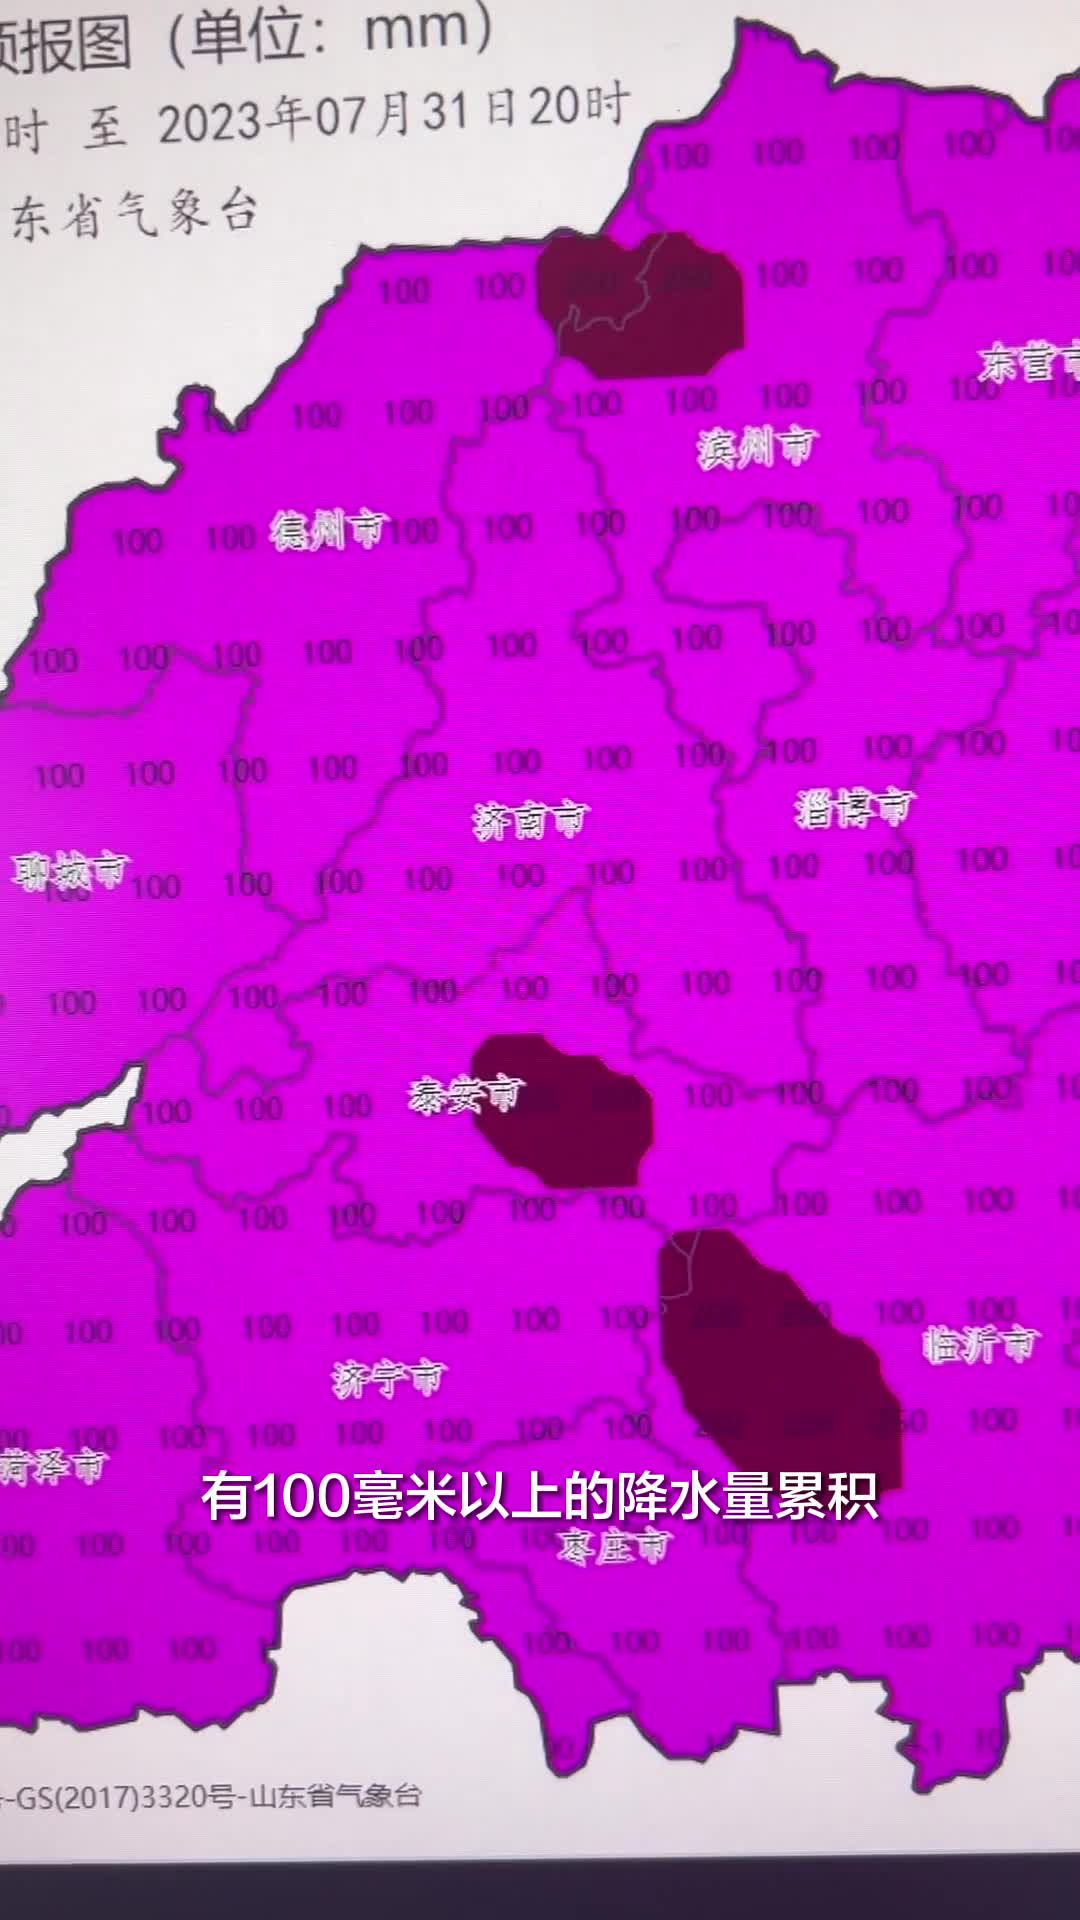 受台风“杜苏芮”影响 预计7月28日夜间到31日白天山东西部和中部有强降水